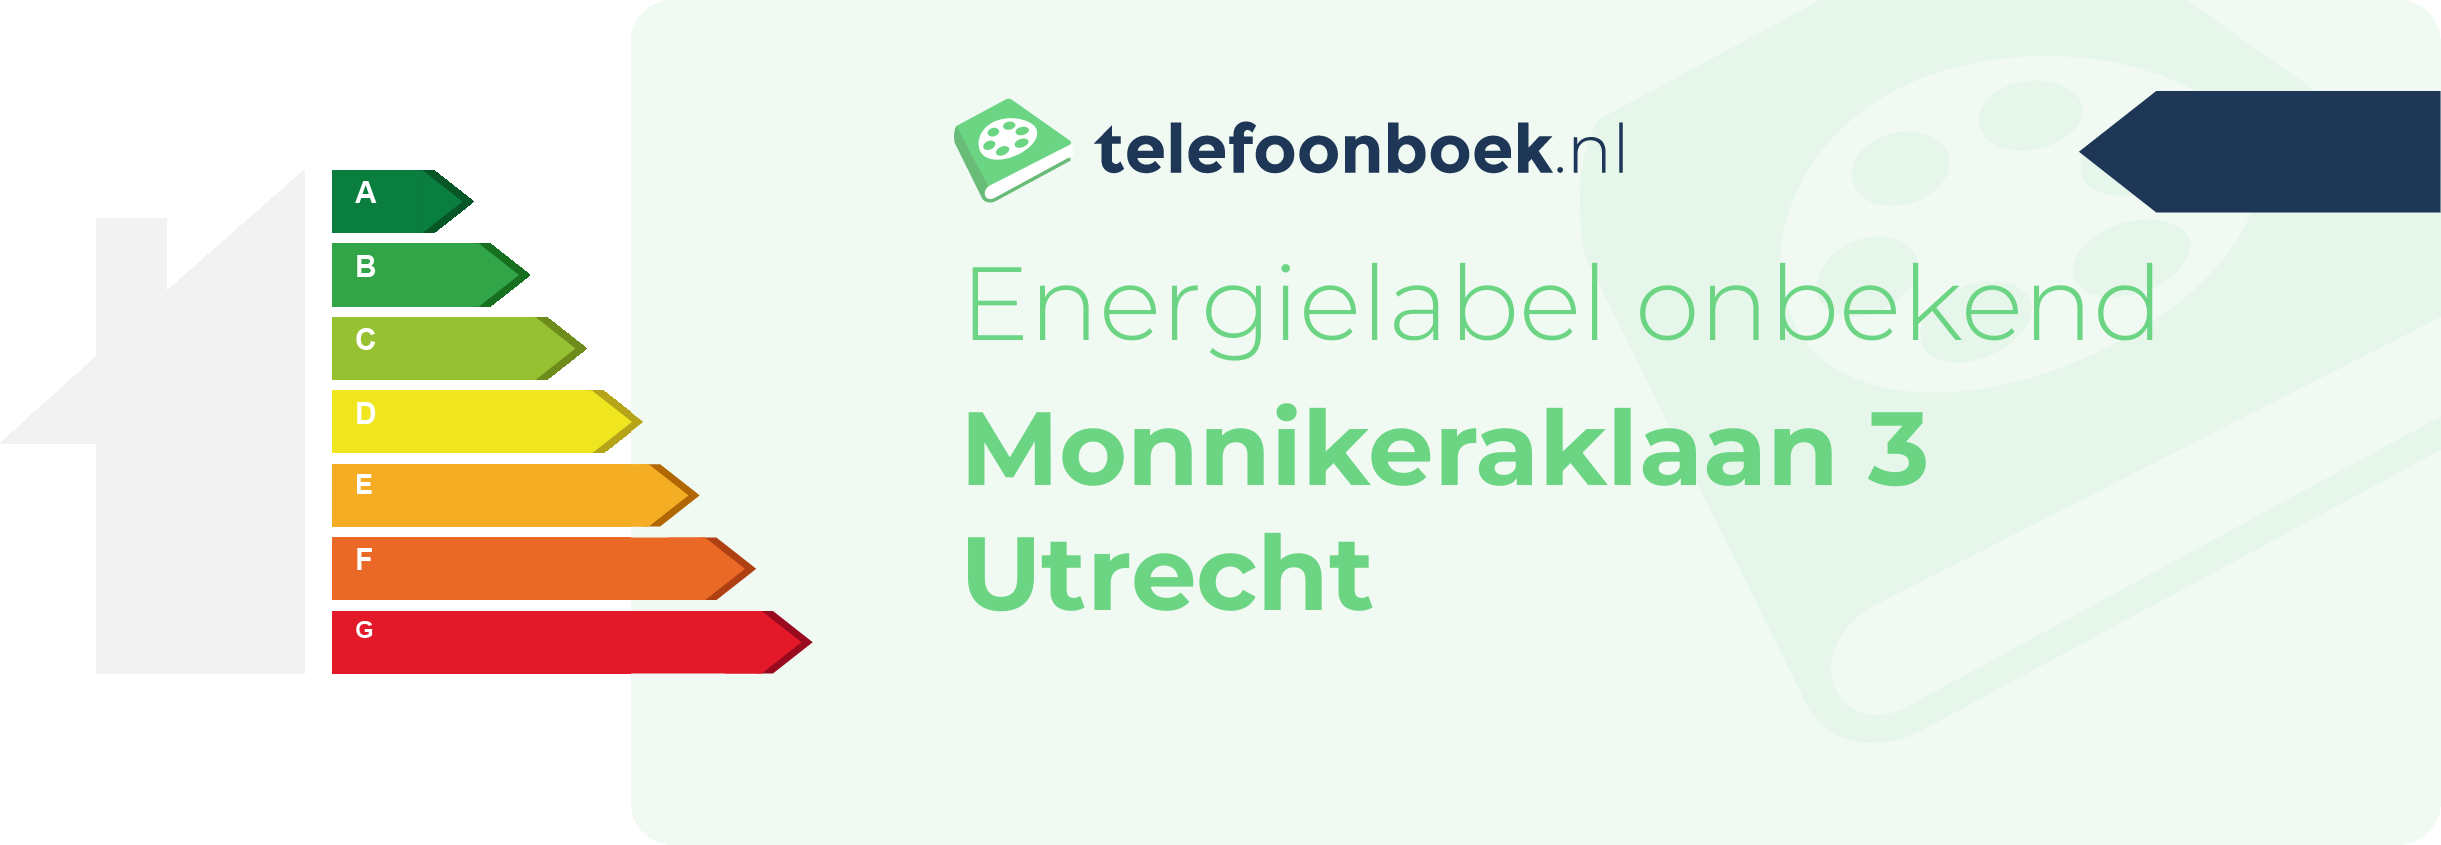 Energielabel Monnikeraklaan 3 Utrecht